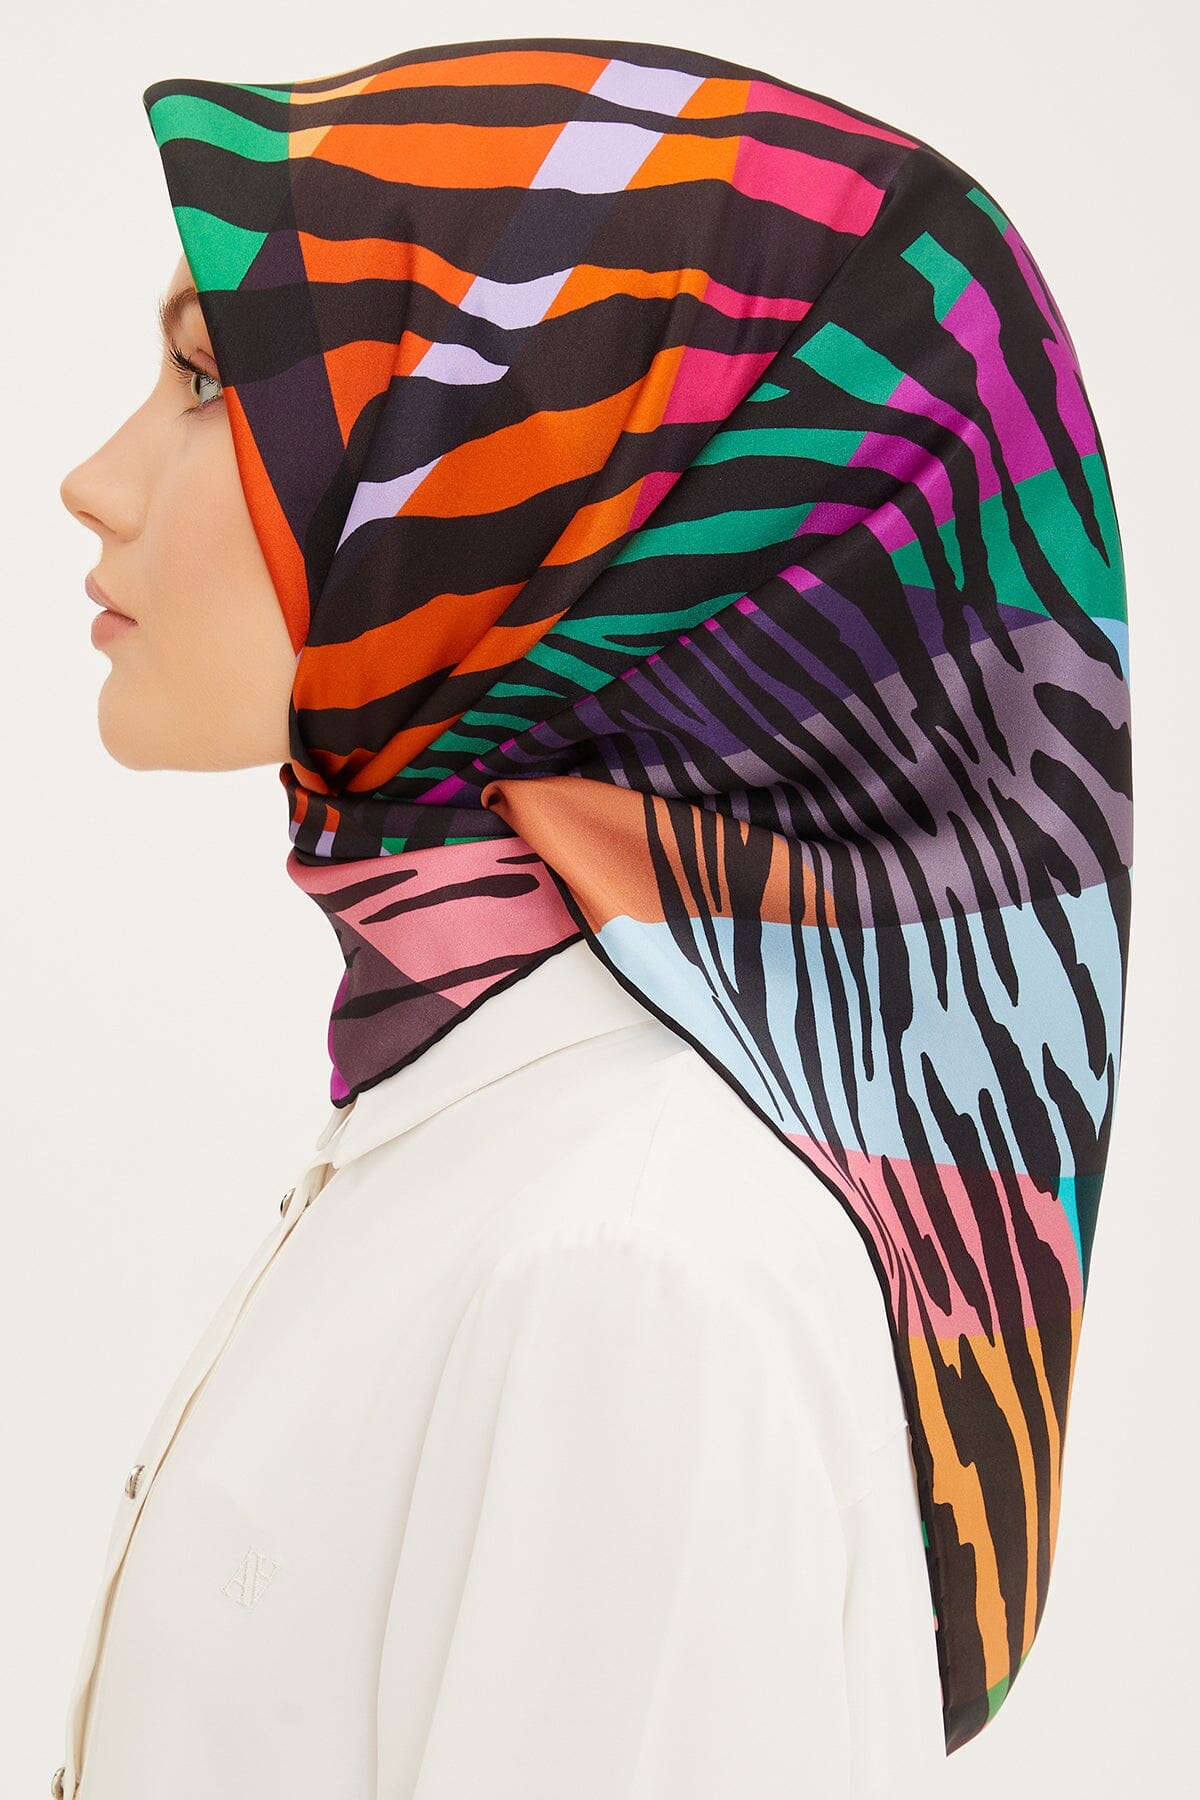 Armine Empower Women Silk Scarf #2 Silk Hijabs,Armine Armine 